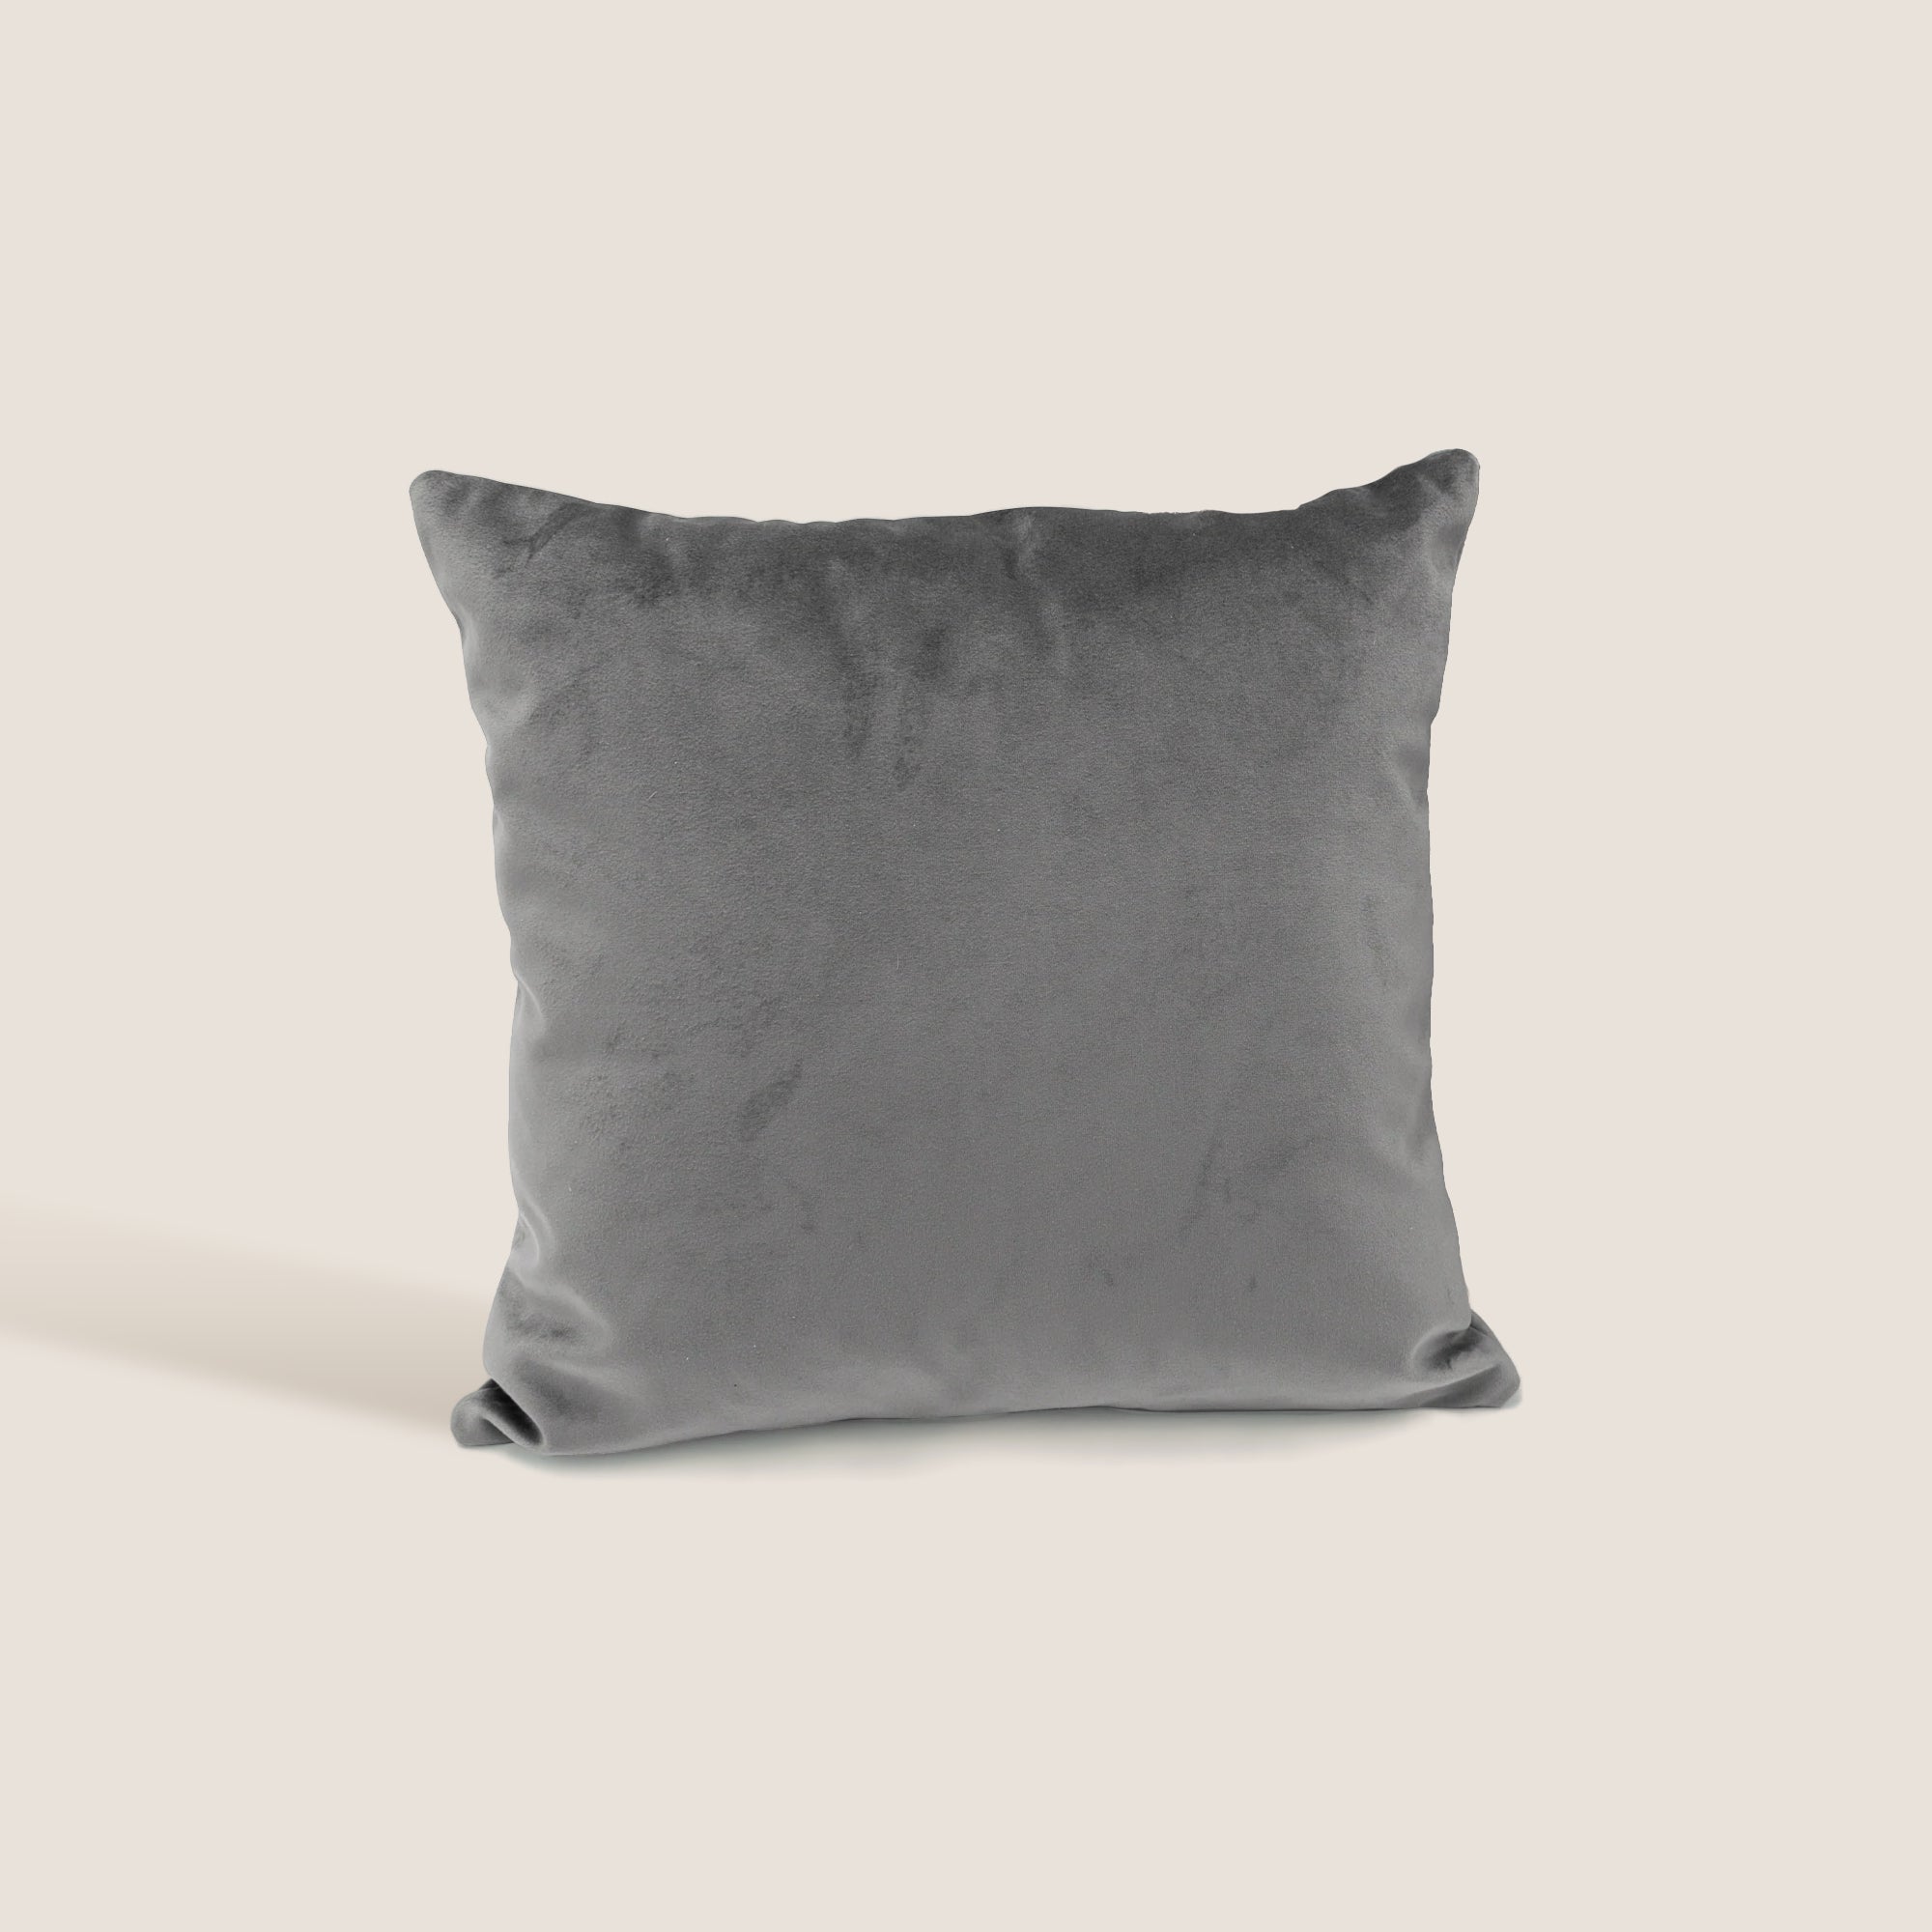 Velluto cuscini quadrati disponibile in diverse colorazioni in velluto impermeabile